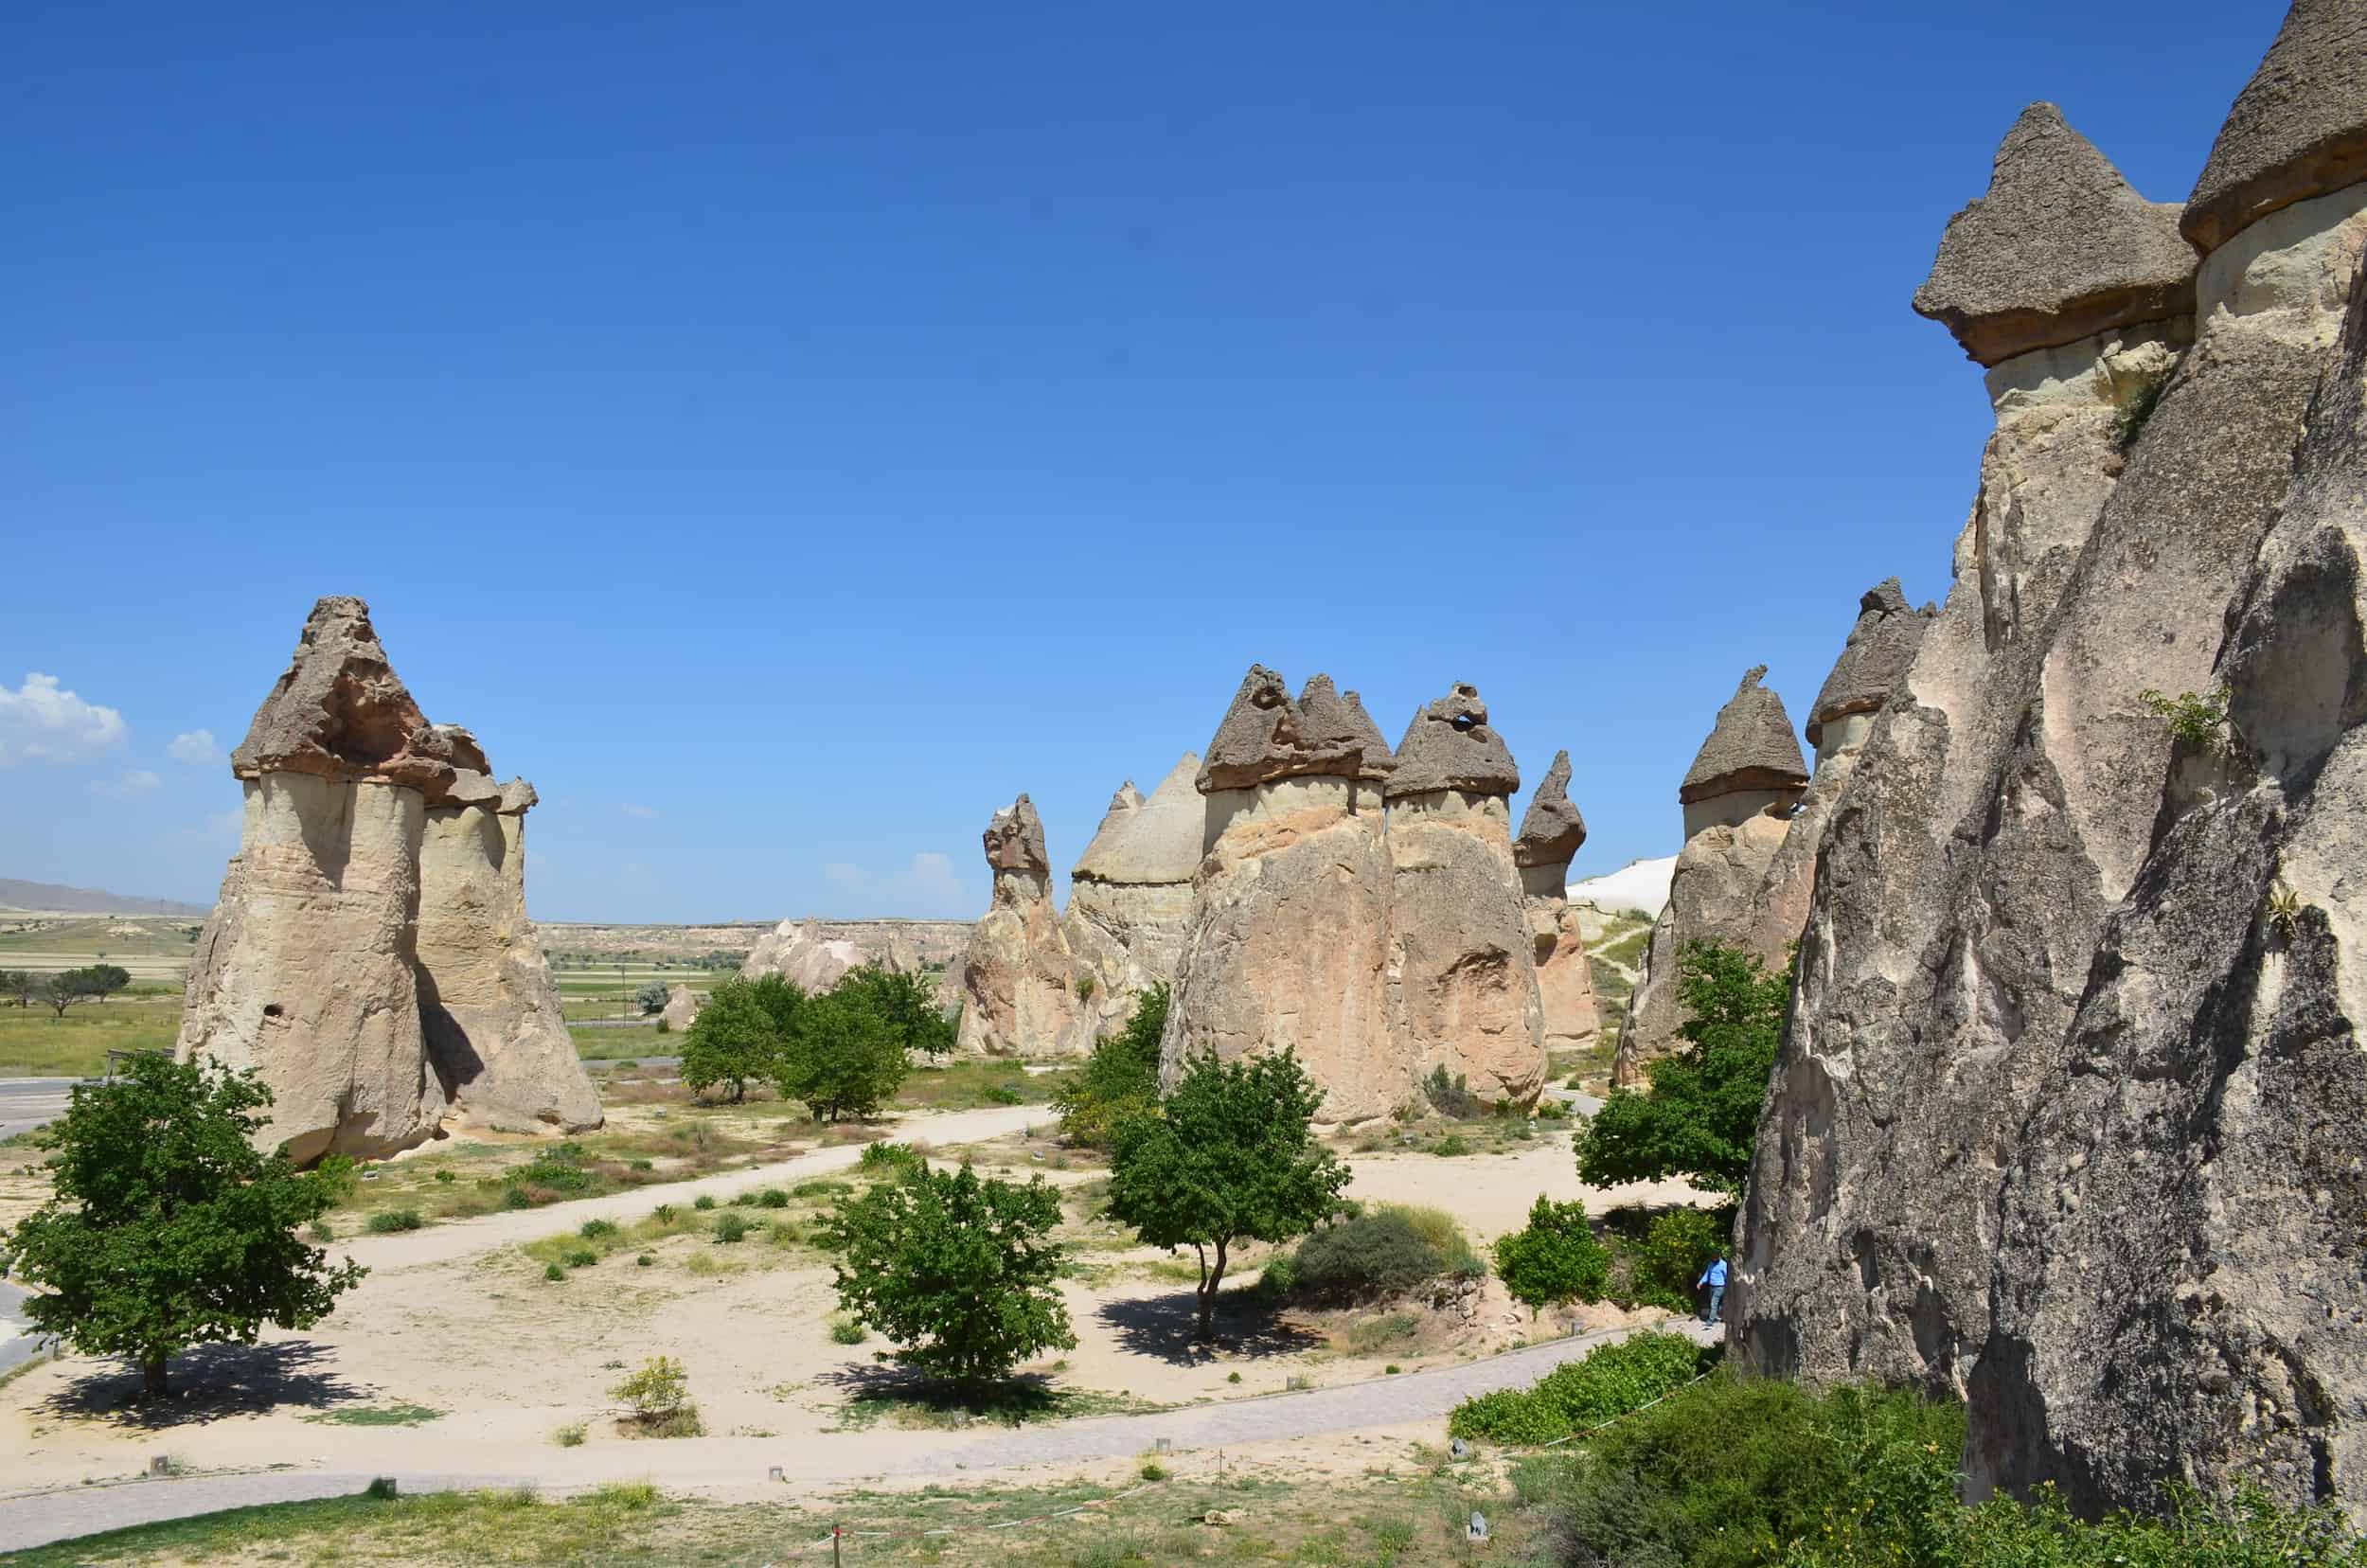 Paşabağ (Monk's Valley) in Cappadocia, Turkey